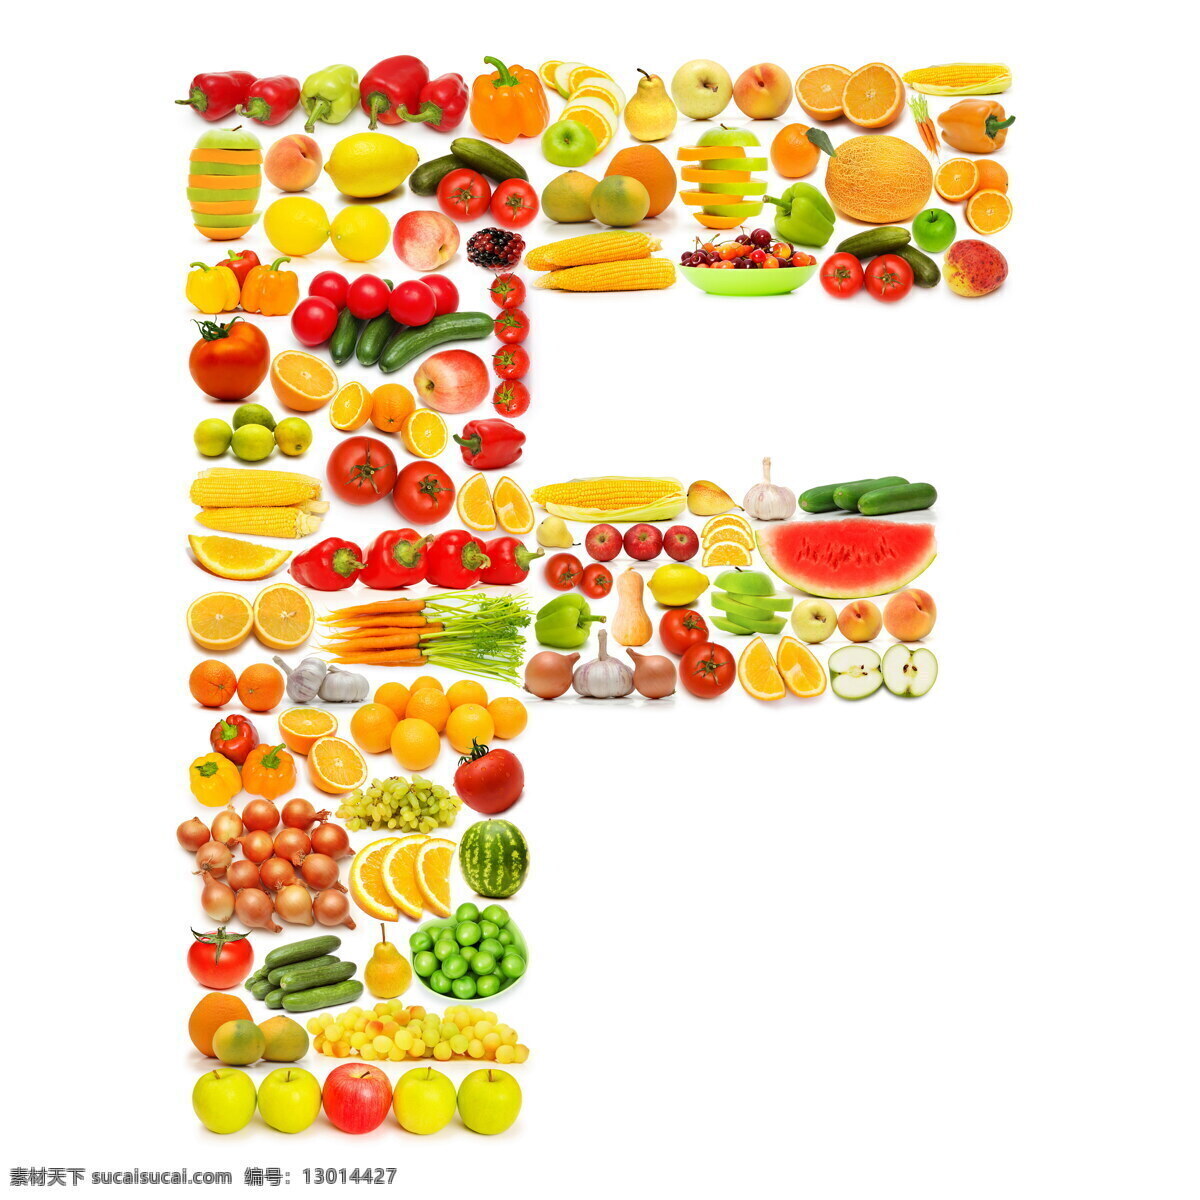 蔬菜水果 组成 字母 f 字母f 辣椒 柠檬 苹果 黄瓜 橙子 香蕉 蔬菜 水果 食物 水果蔬菜 餐饮美食 水果图片